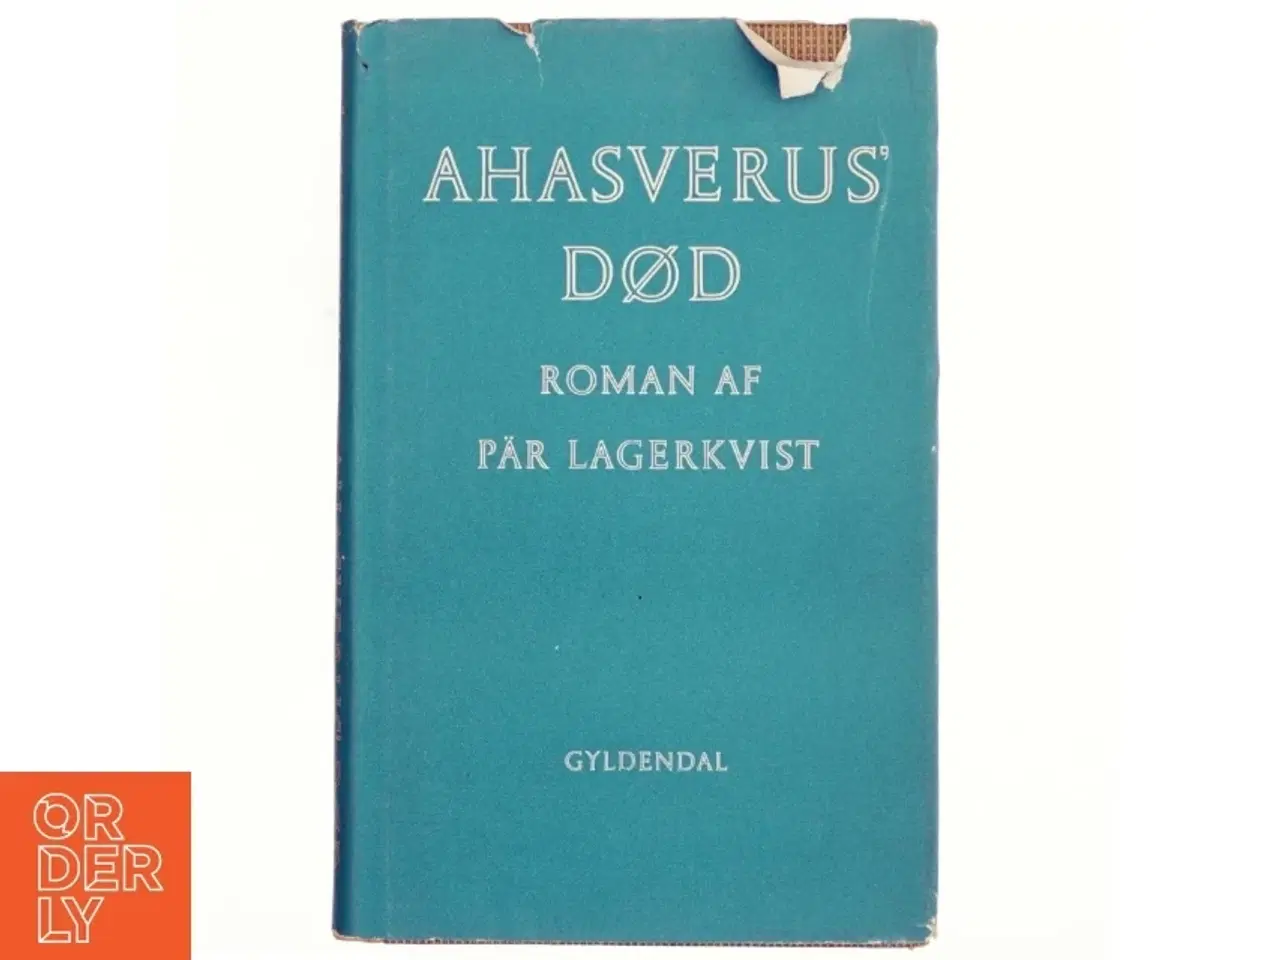 Billede 1 - Ahasverus' død af Pär Lagerkvist (bog)